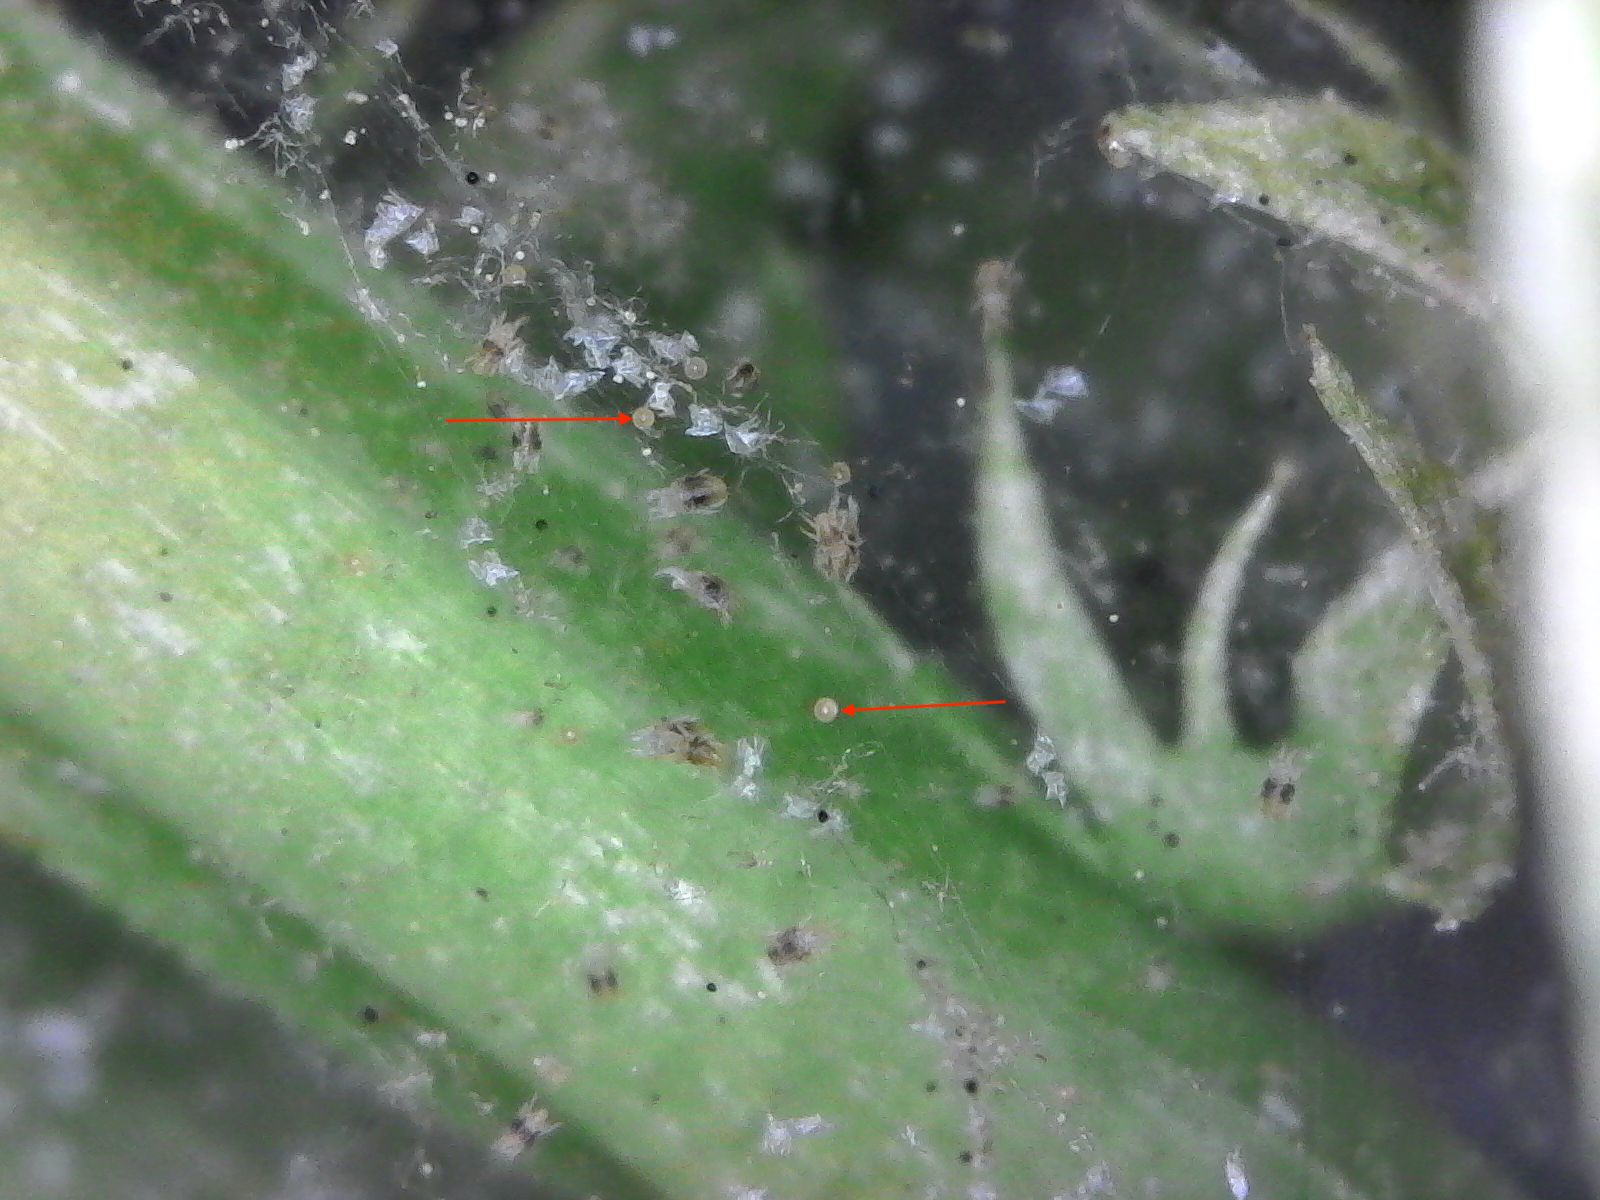 Spider mite eggs